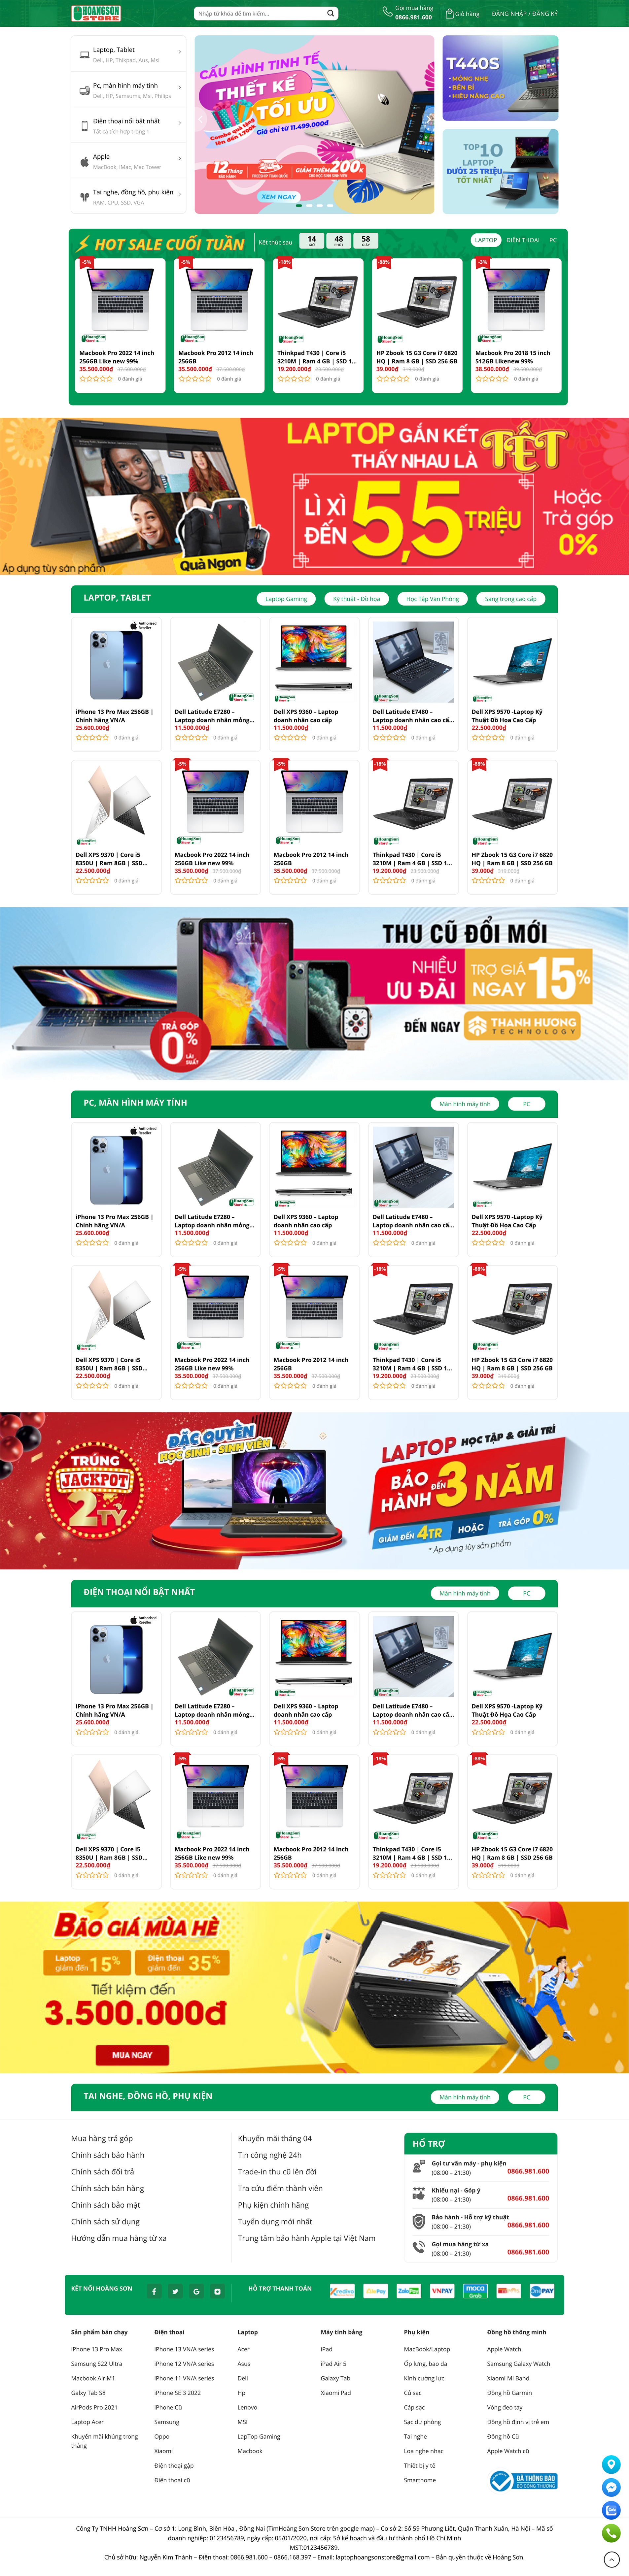 Dự án Hoàng Sơn Store – Cửa hàng kinh doanh laptop, máy tính Hoàng Sơn